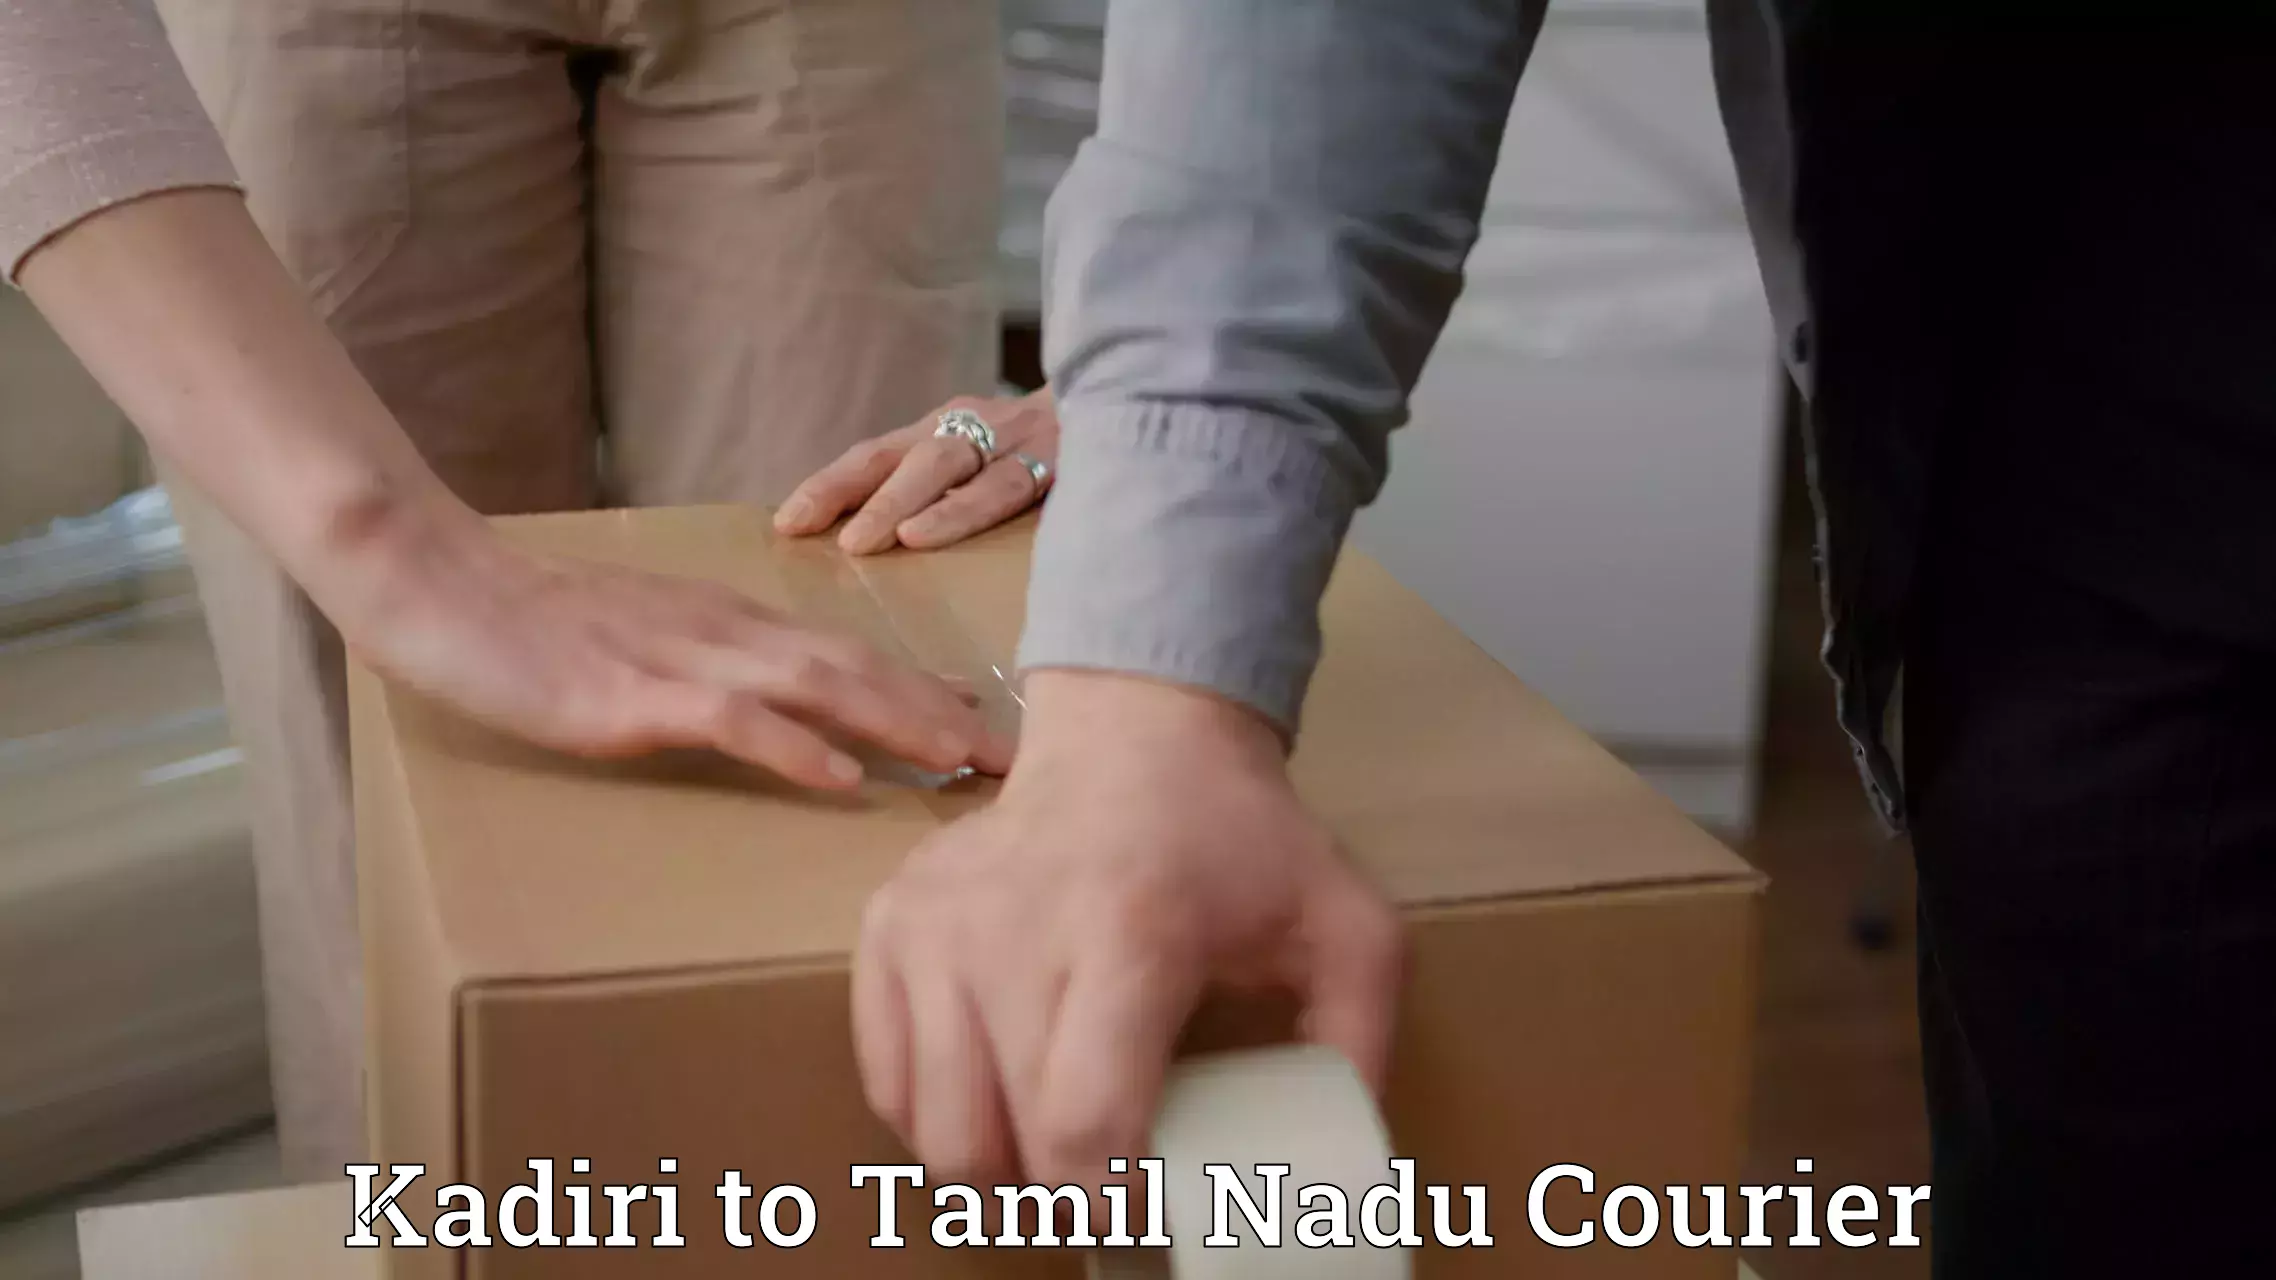 Full-service courier options Kadiri to Tiruvallur